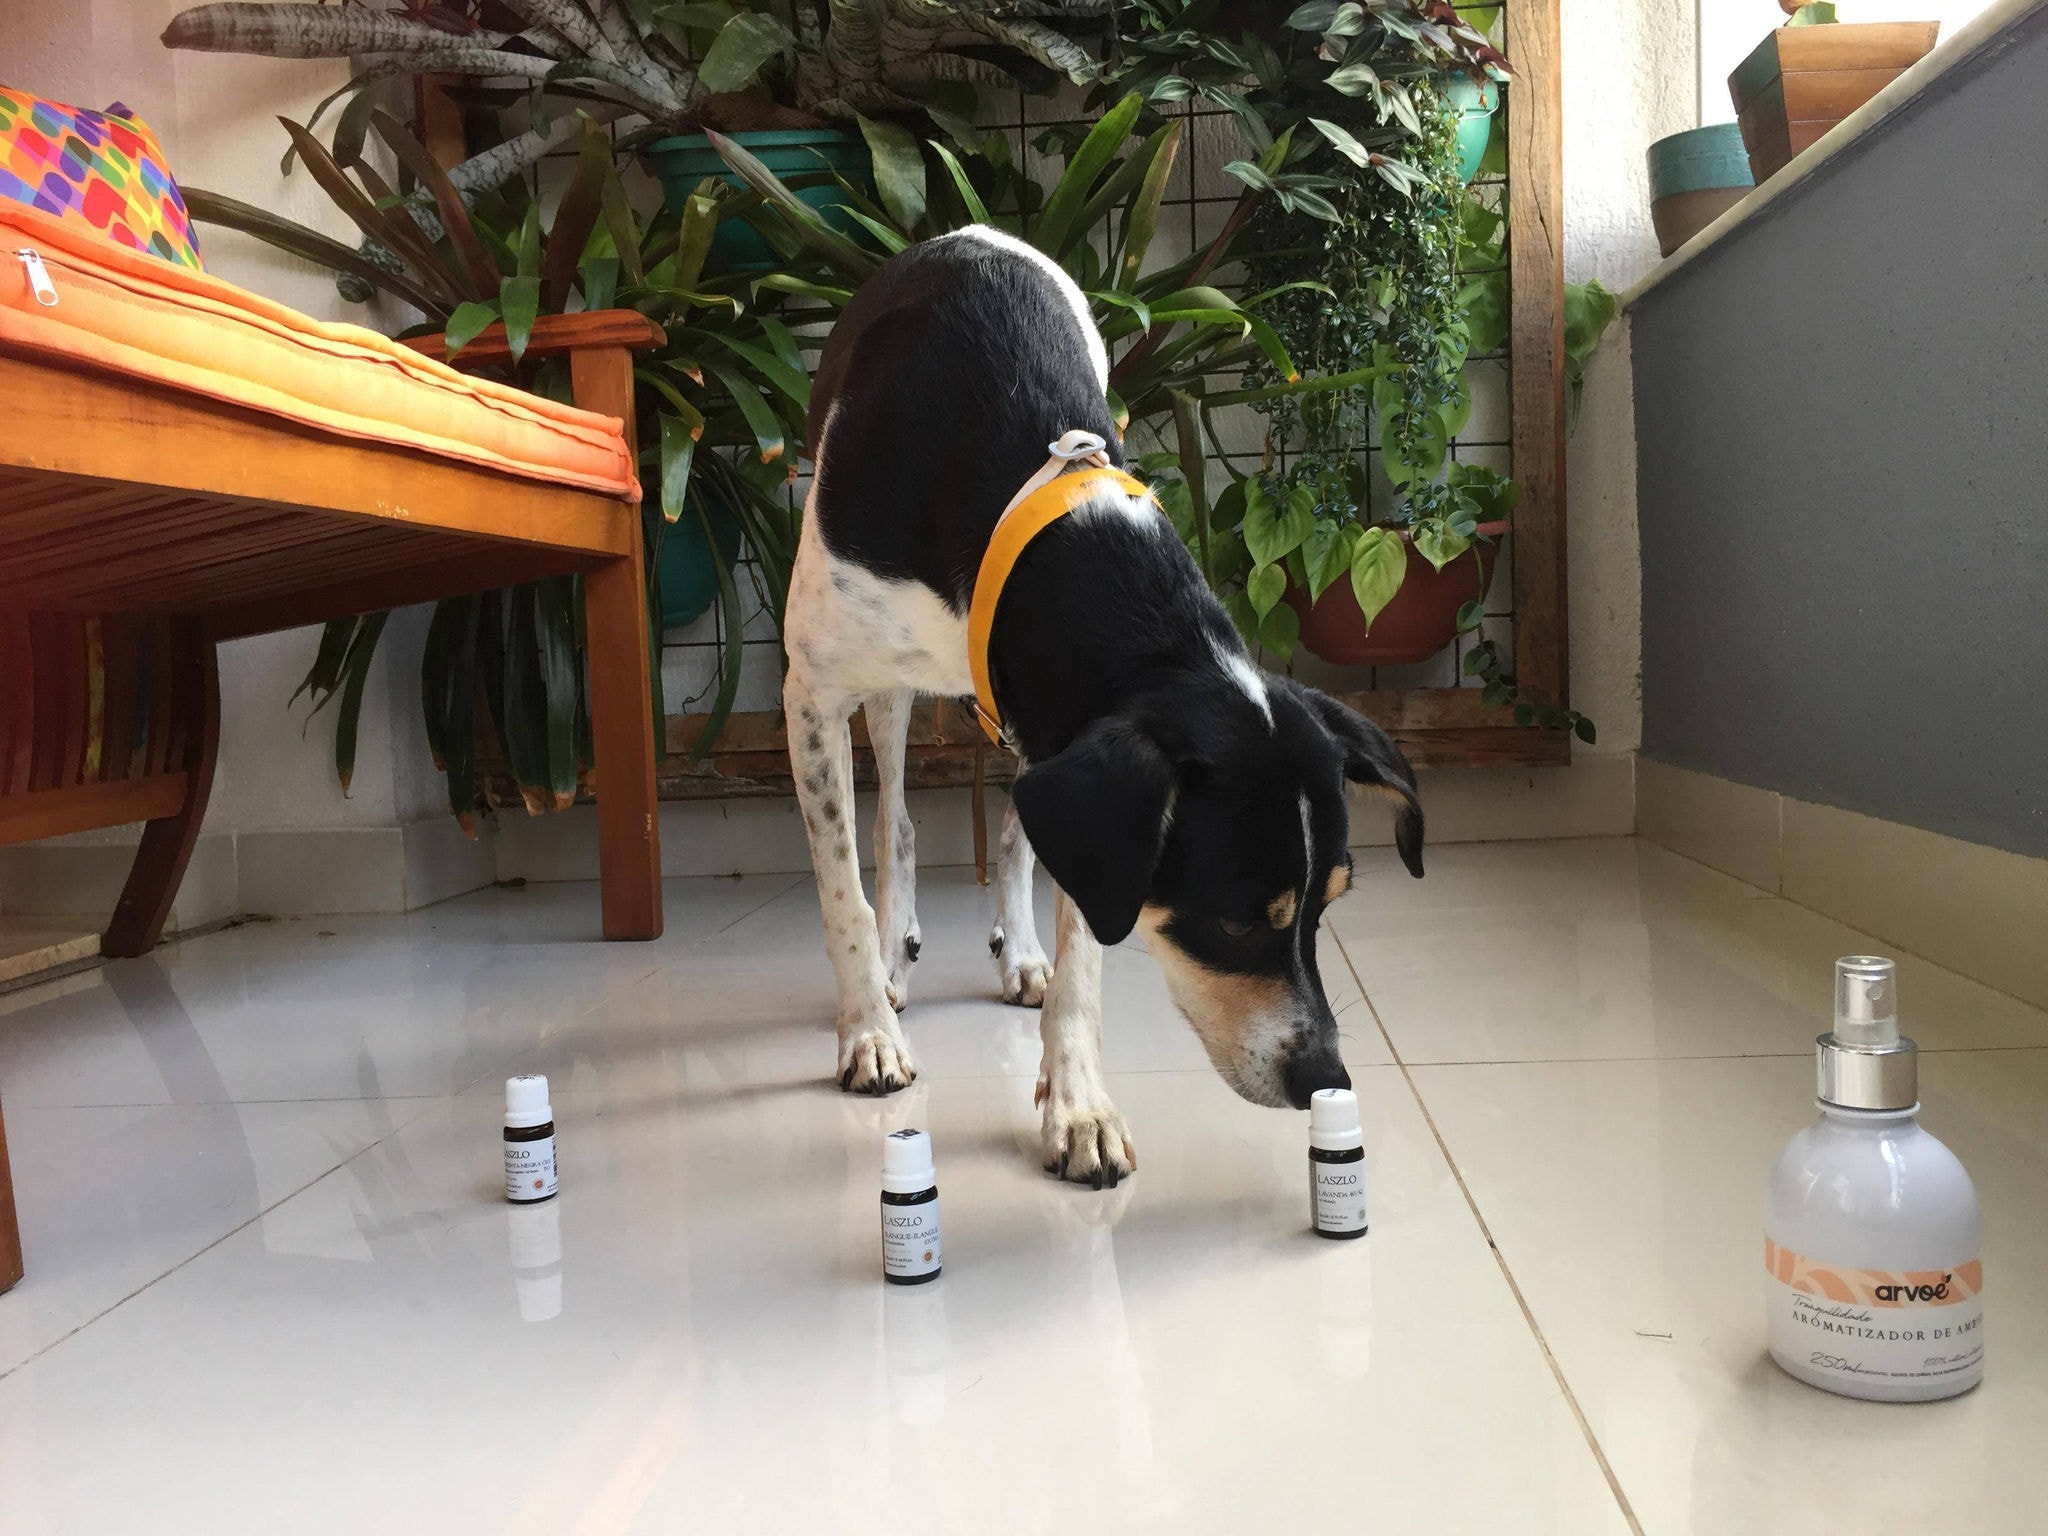 Por acreditar que os cães são capazes de identificar o que é melhor para eles, a bióloga Luanda permite que Beto, o seu pet, escolha os óleos essenciais que serão usados nas práticas de aromaterapia